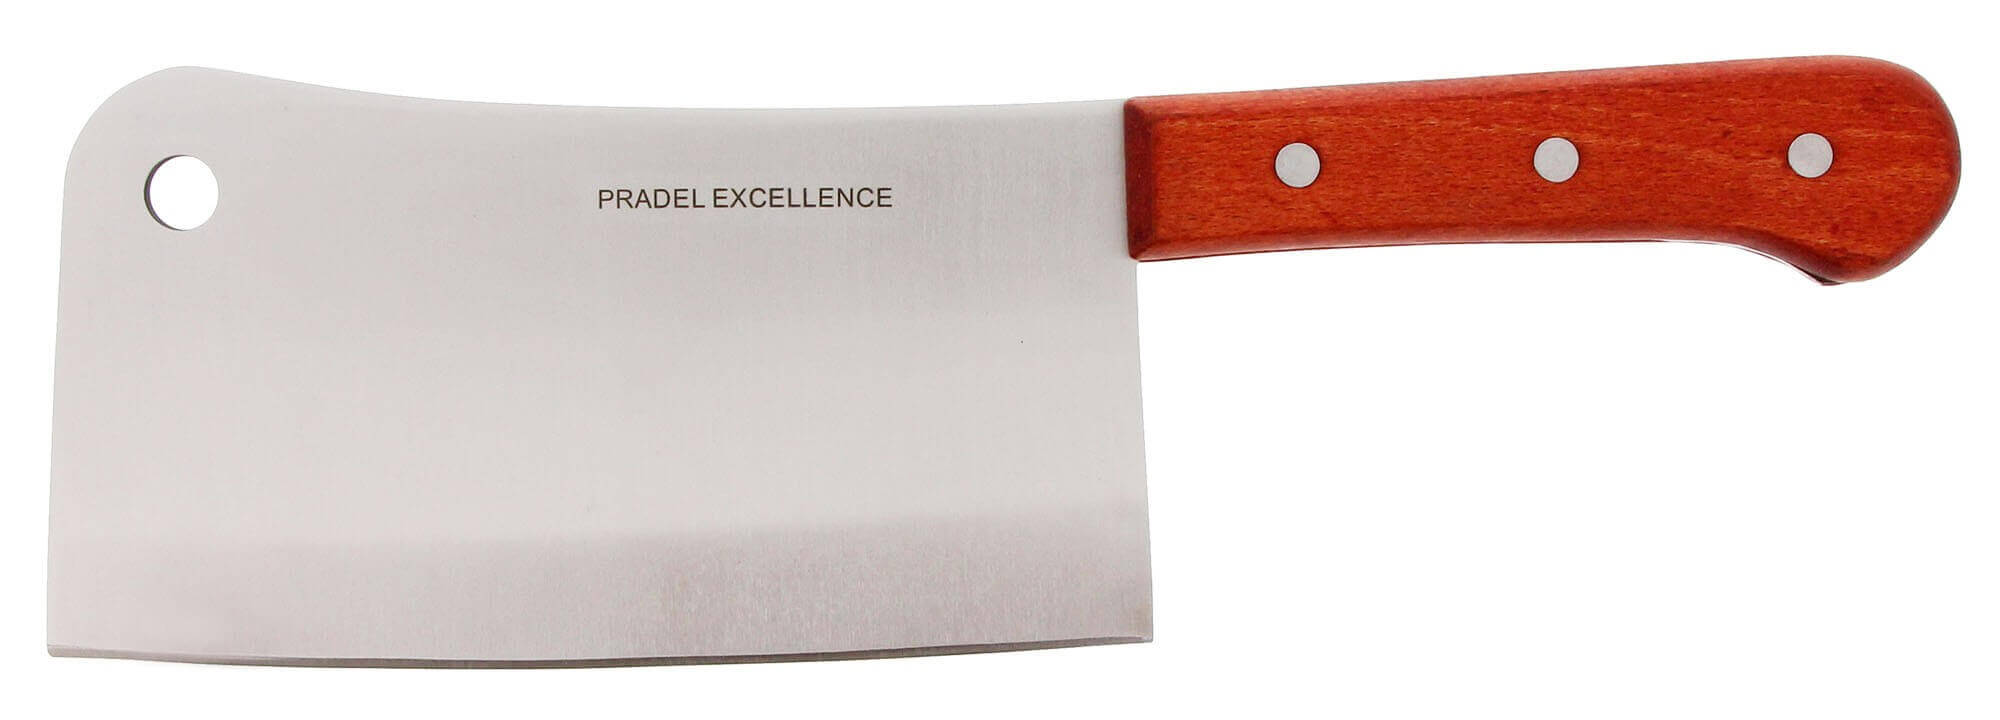 Le couteau PRADEL excellence